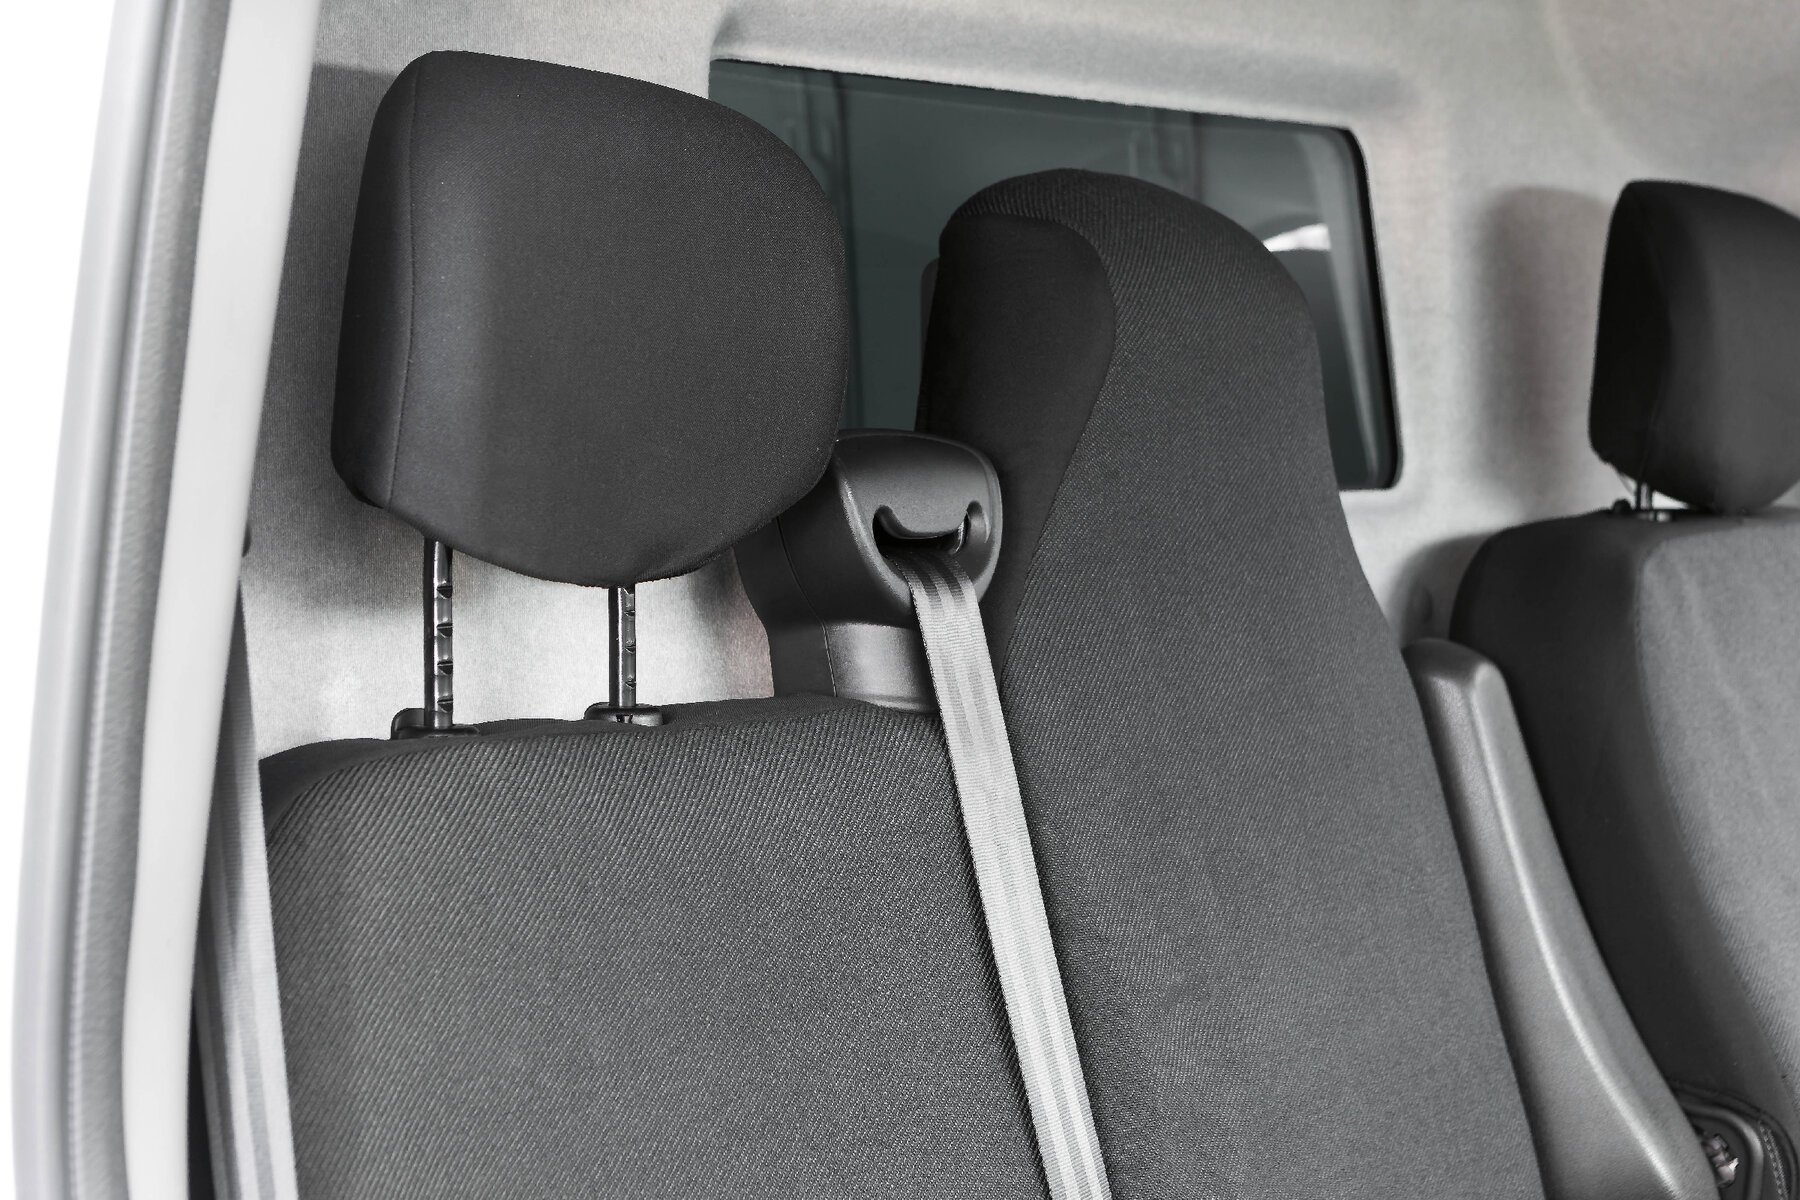 Housse de siège Transporter en tissu pour Opel Movano, Renault Master, Nissan Interstar, siège simple et 2 housses de siège avant simples